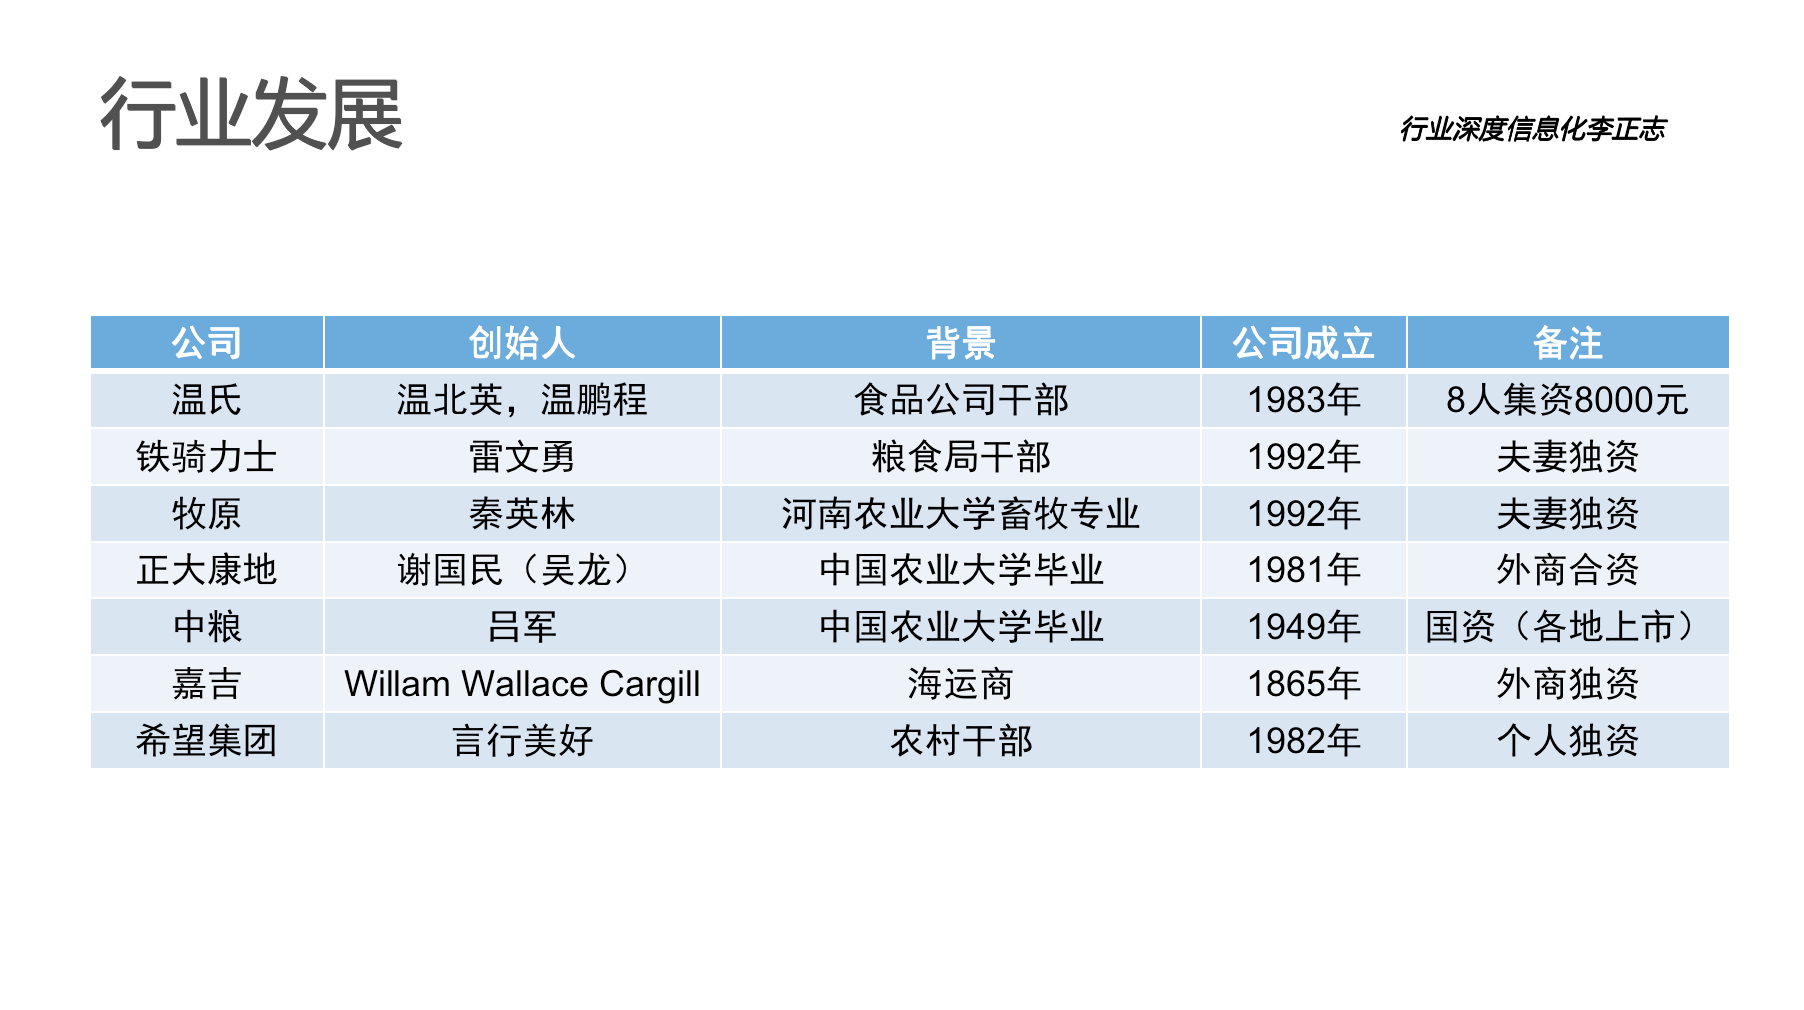 宝运莱官网华夏农牧行业讯息化结构-天主视角数字化运营(图2)